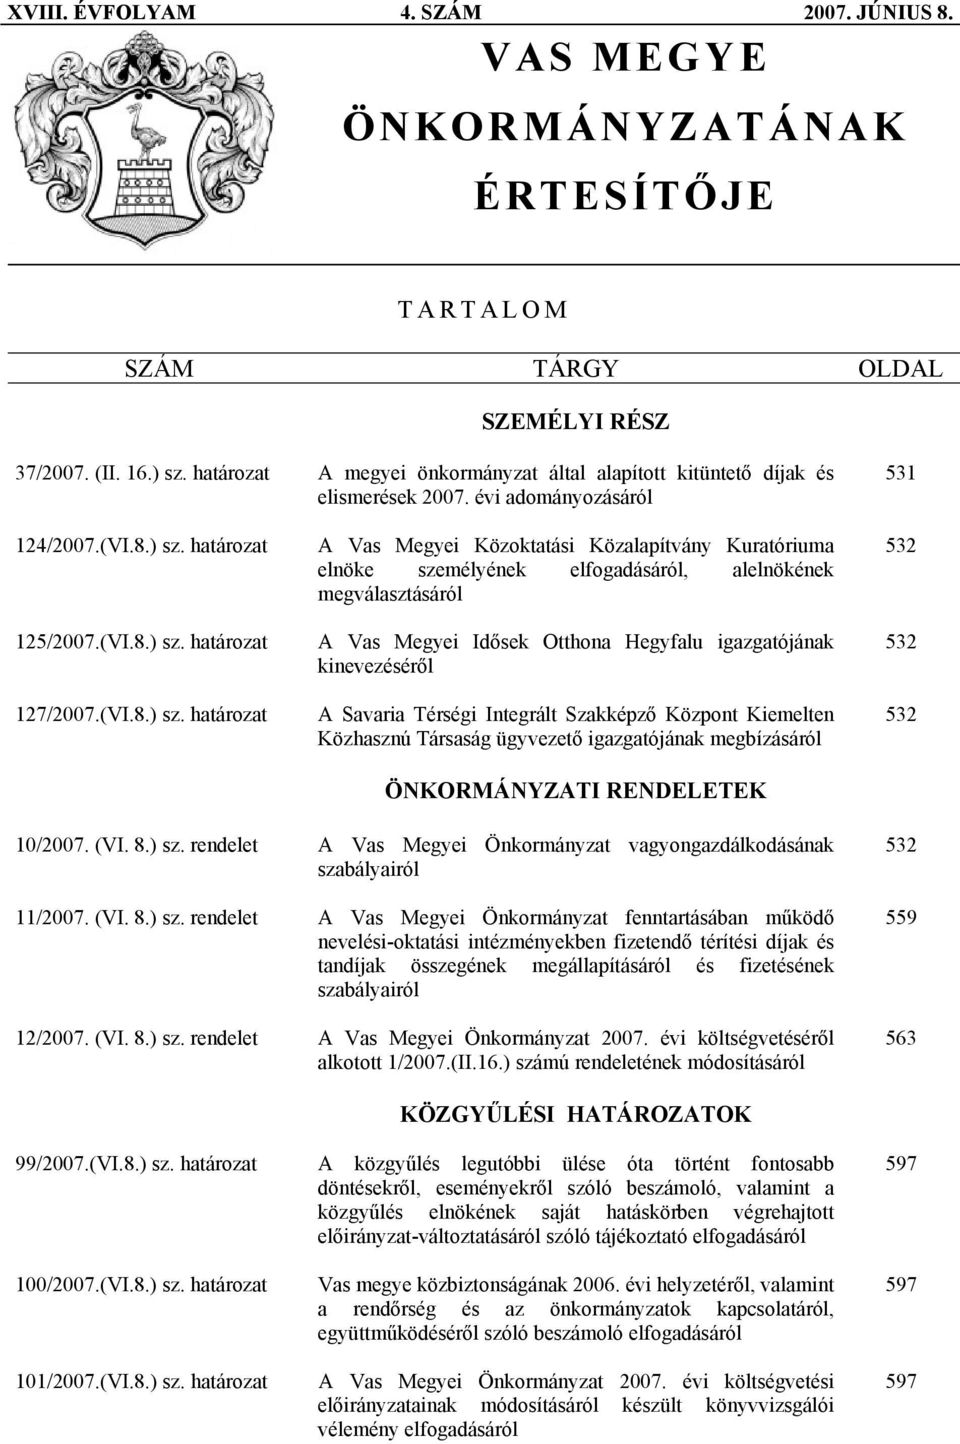 határozat 125/2007.(VI.8.) sz.